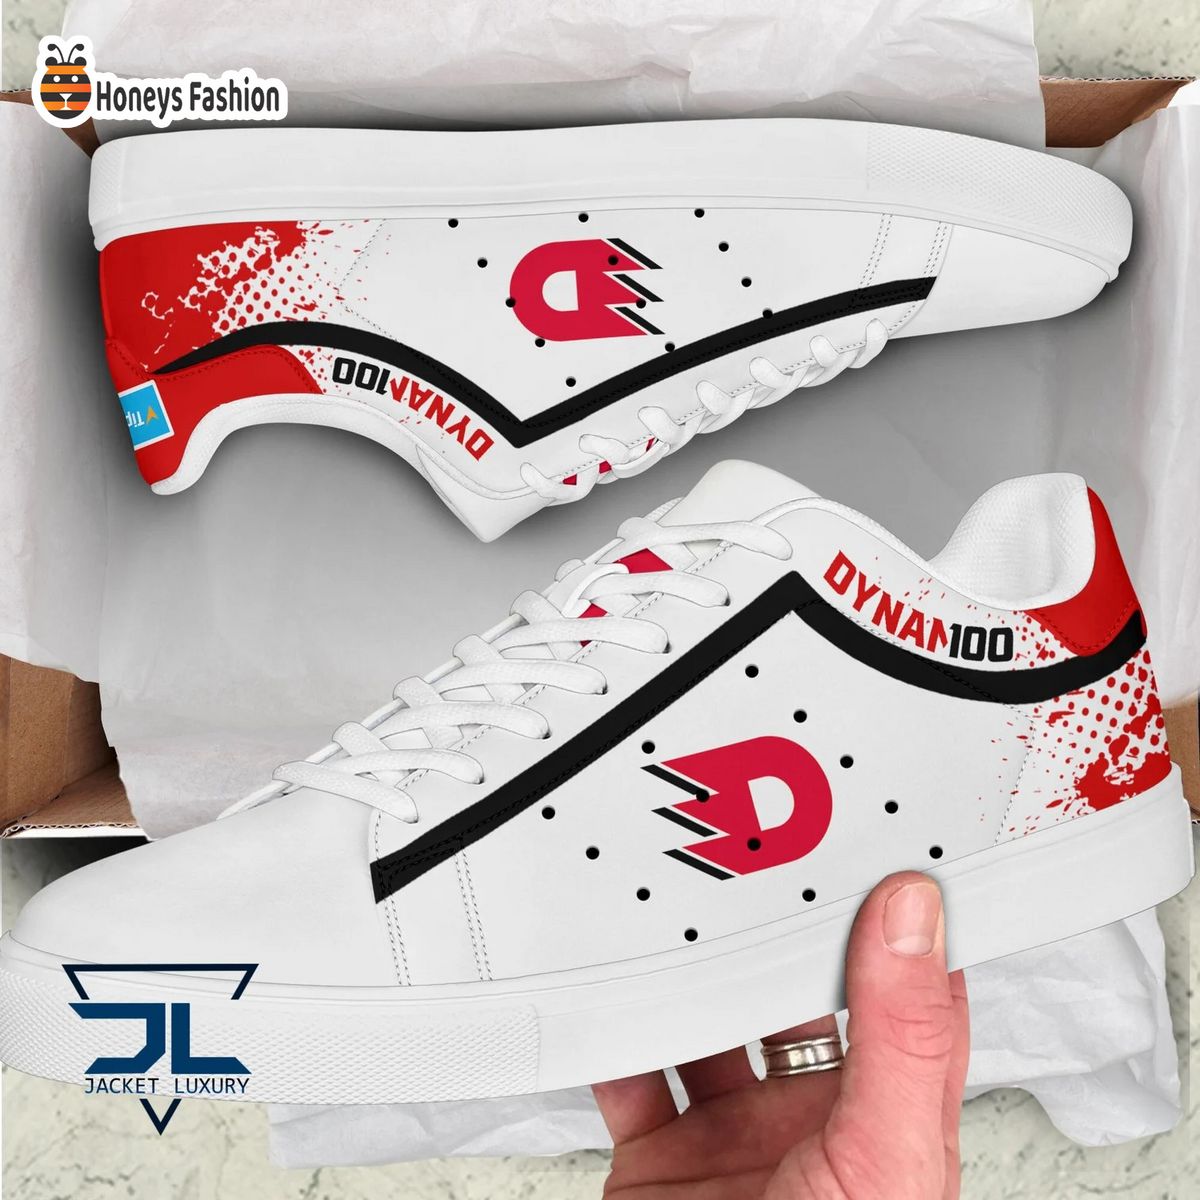 HC Dynamo Pardubice stan smith skate shoes